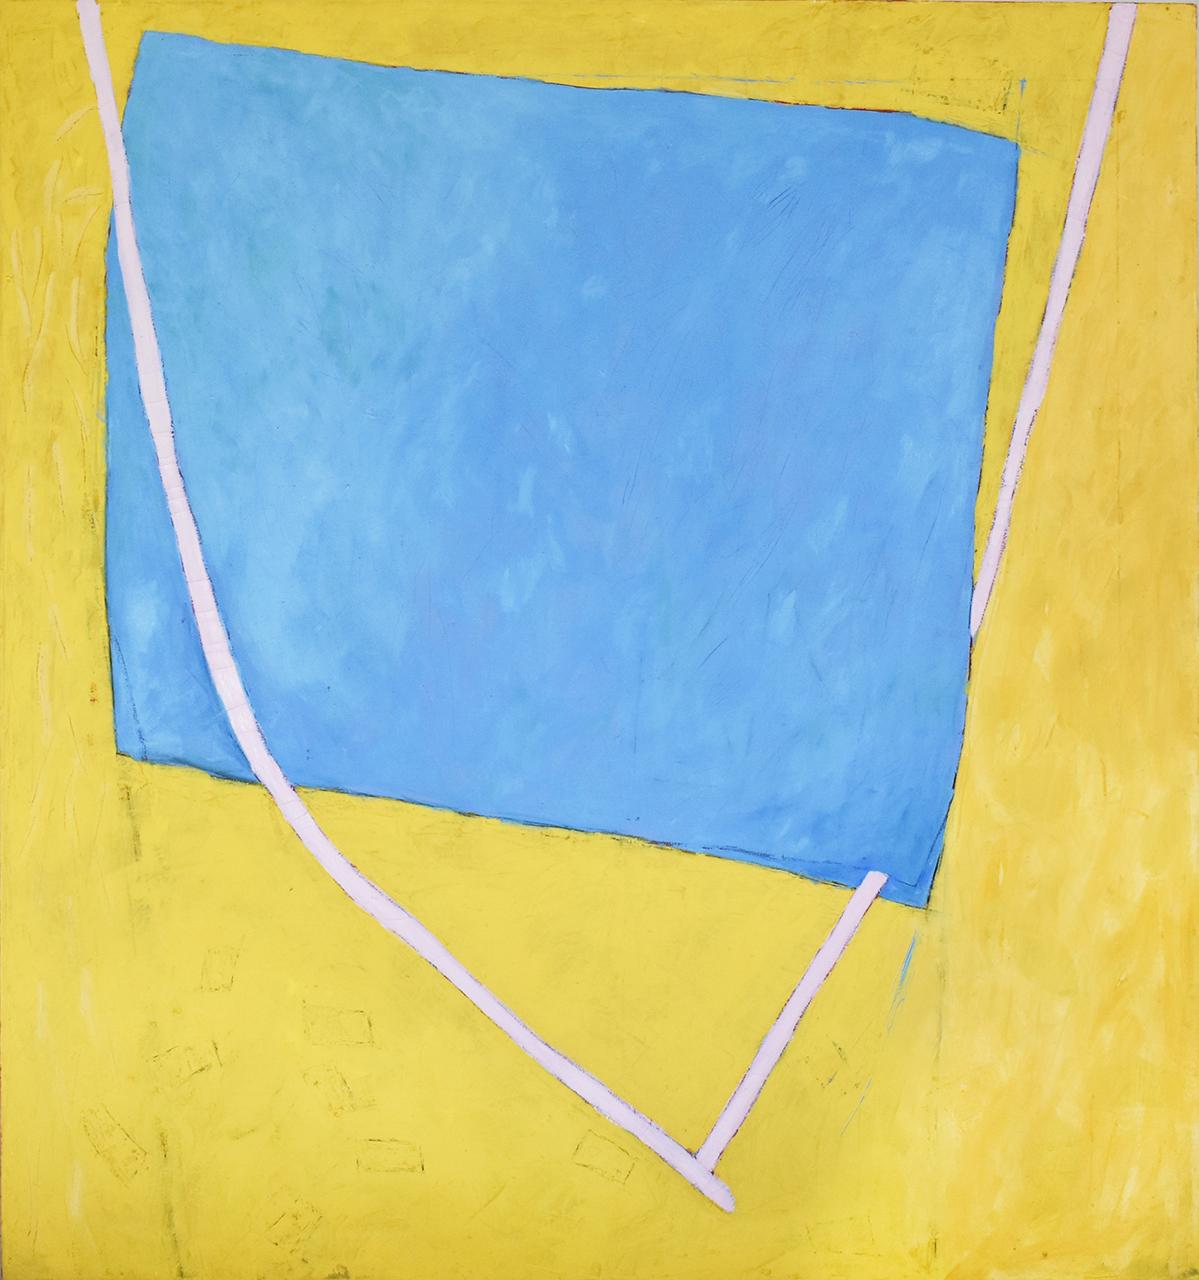 Nan's Lair (Grande peinture géométrique abstraite en jaune vif, bleu et rose) - Painting de Donise English